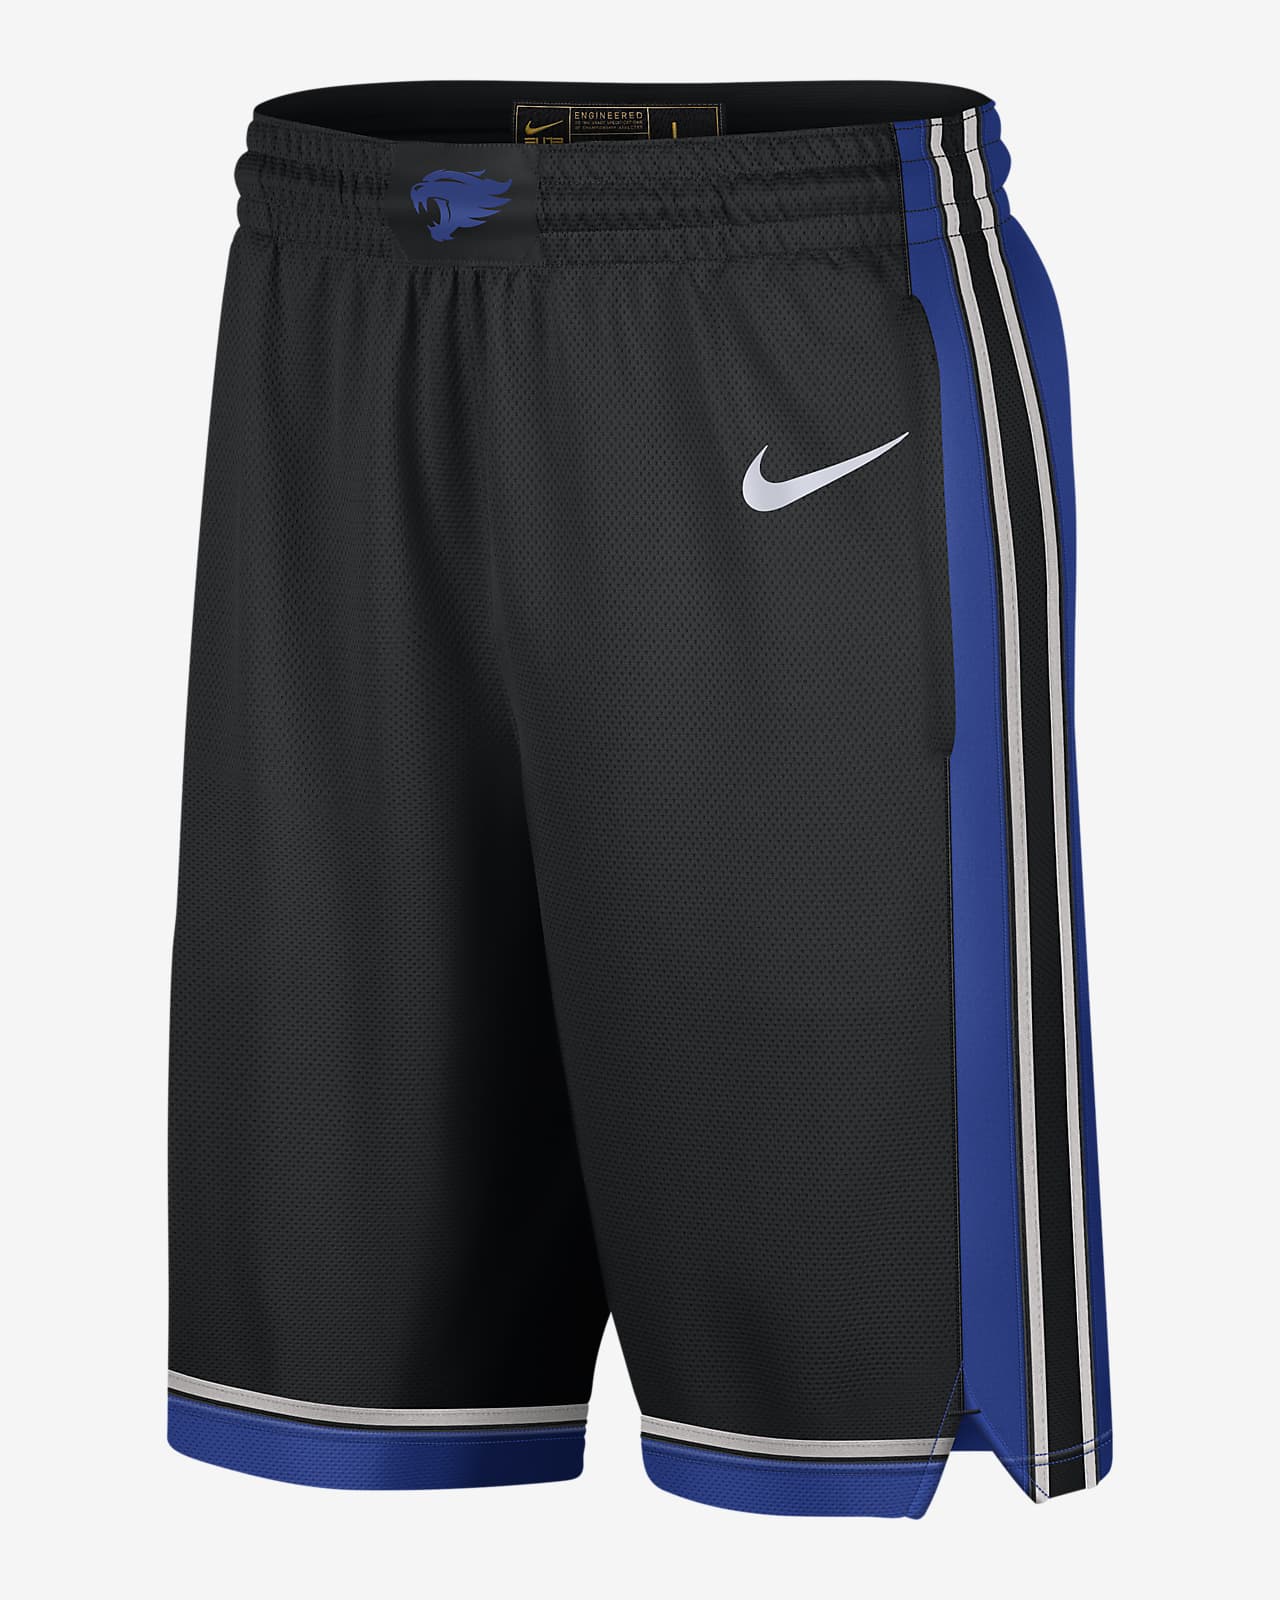 Shorts de básquetbol Replica para hombre Nike College (Kentucky)